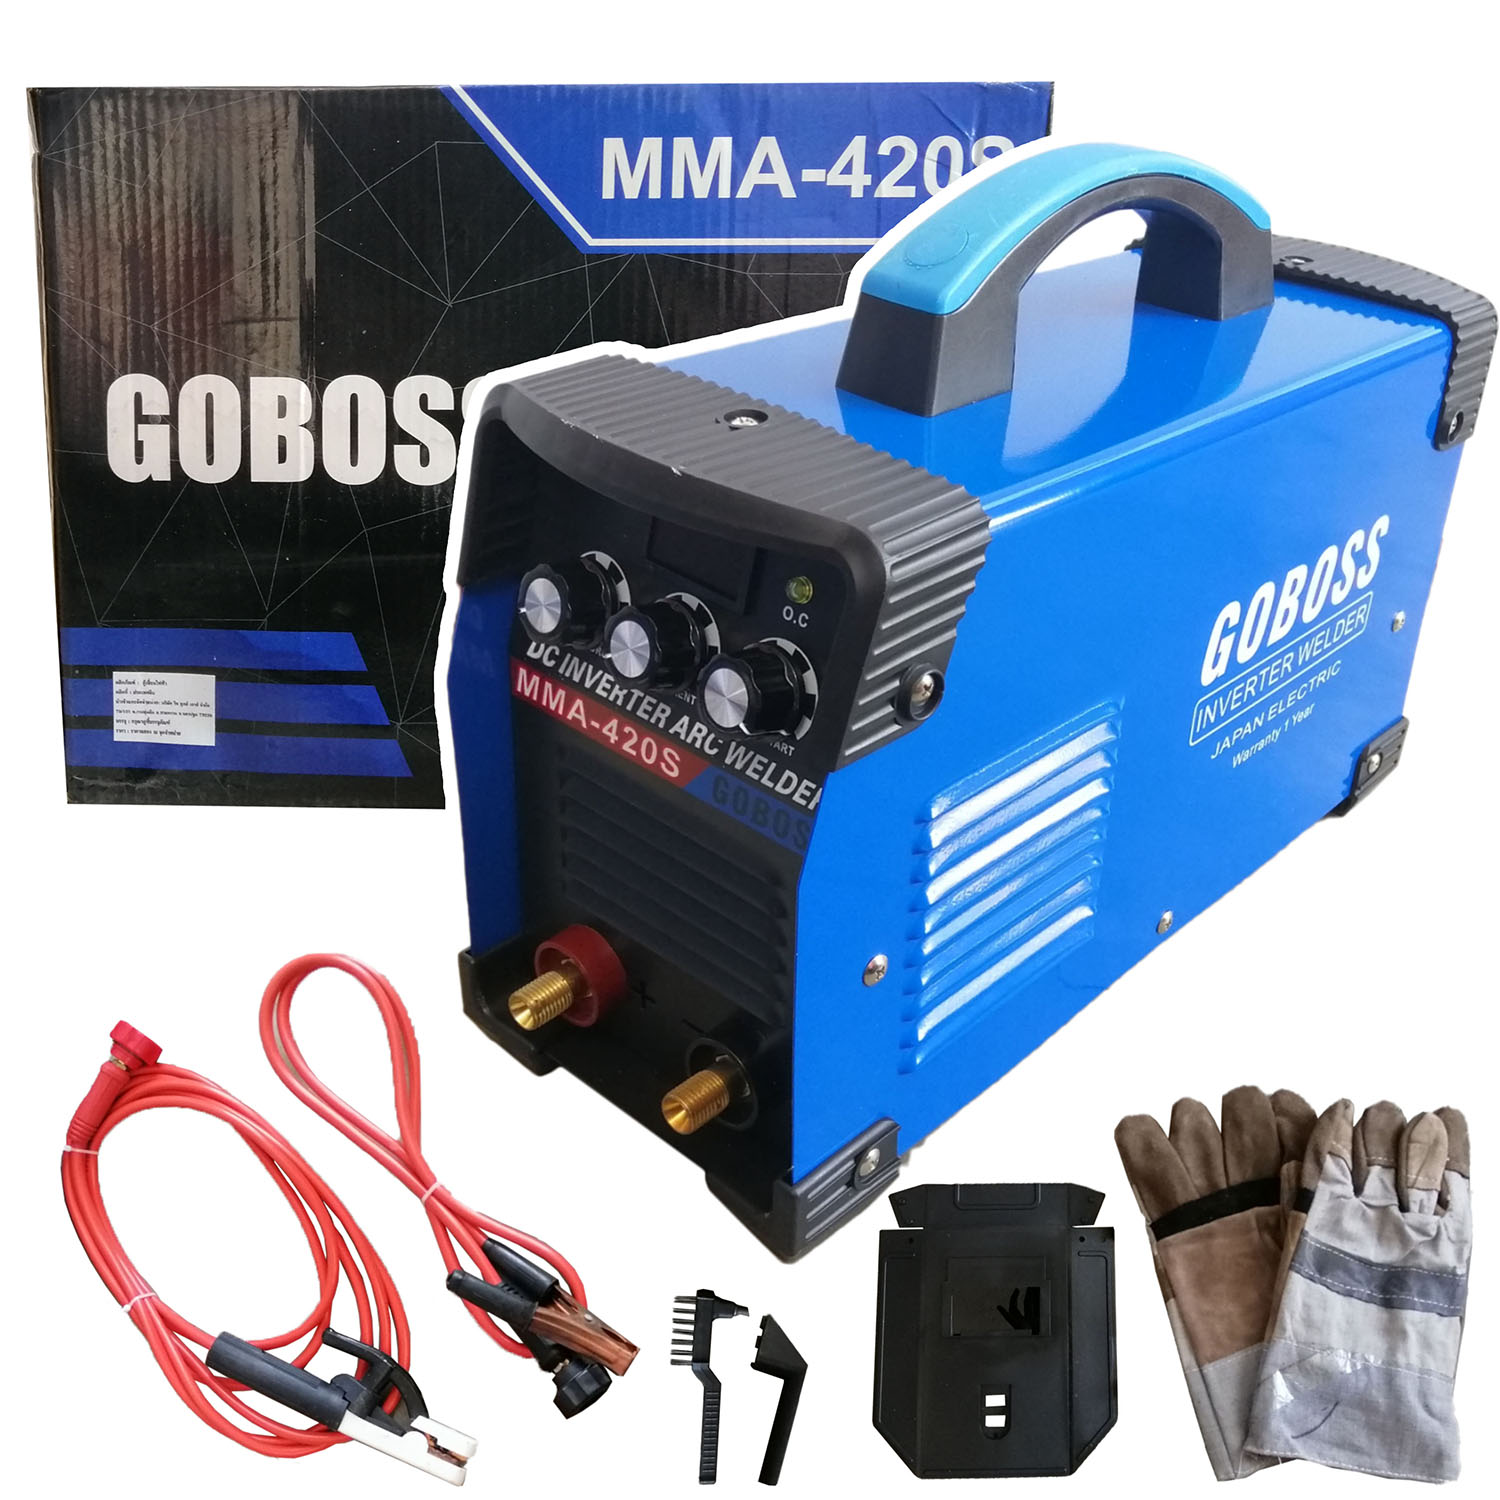 GOBOSS ตู้เชื่อม Inverter ตู้เชื่อมไฟฟ้า เครื่องเชื่อม ARC MMA-420S